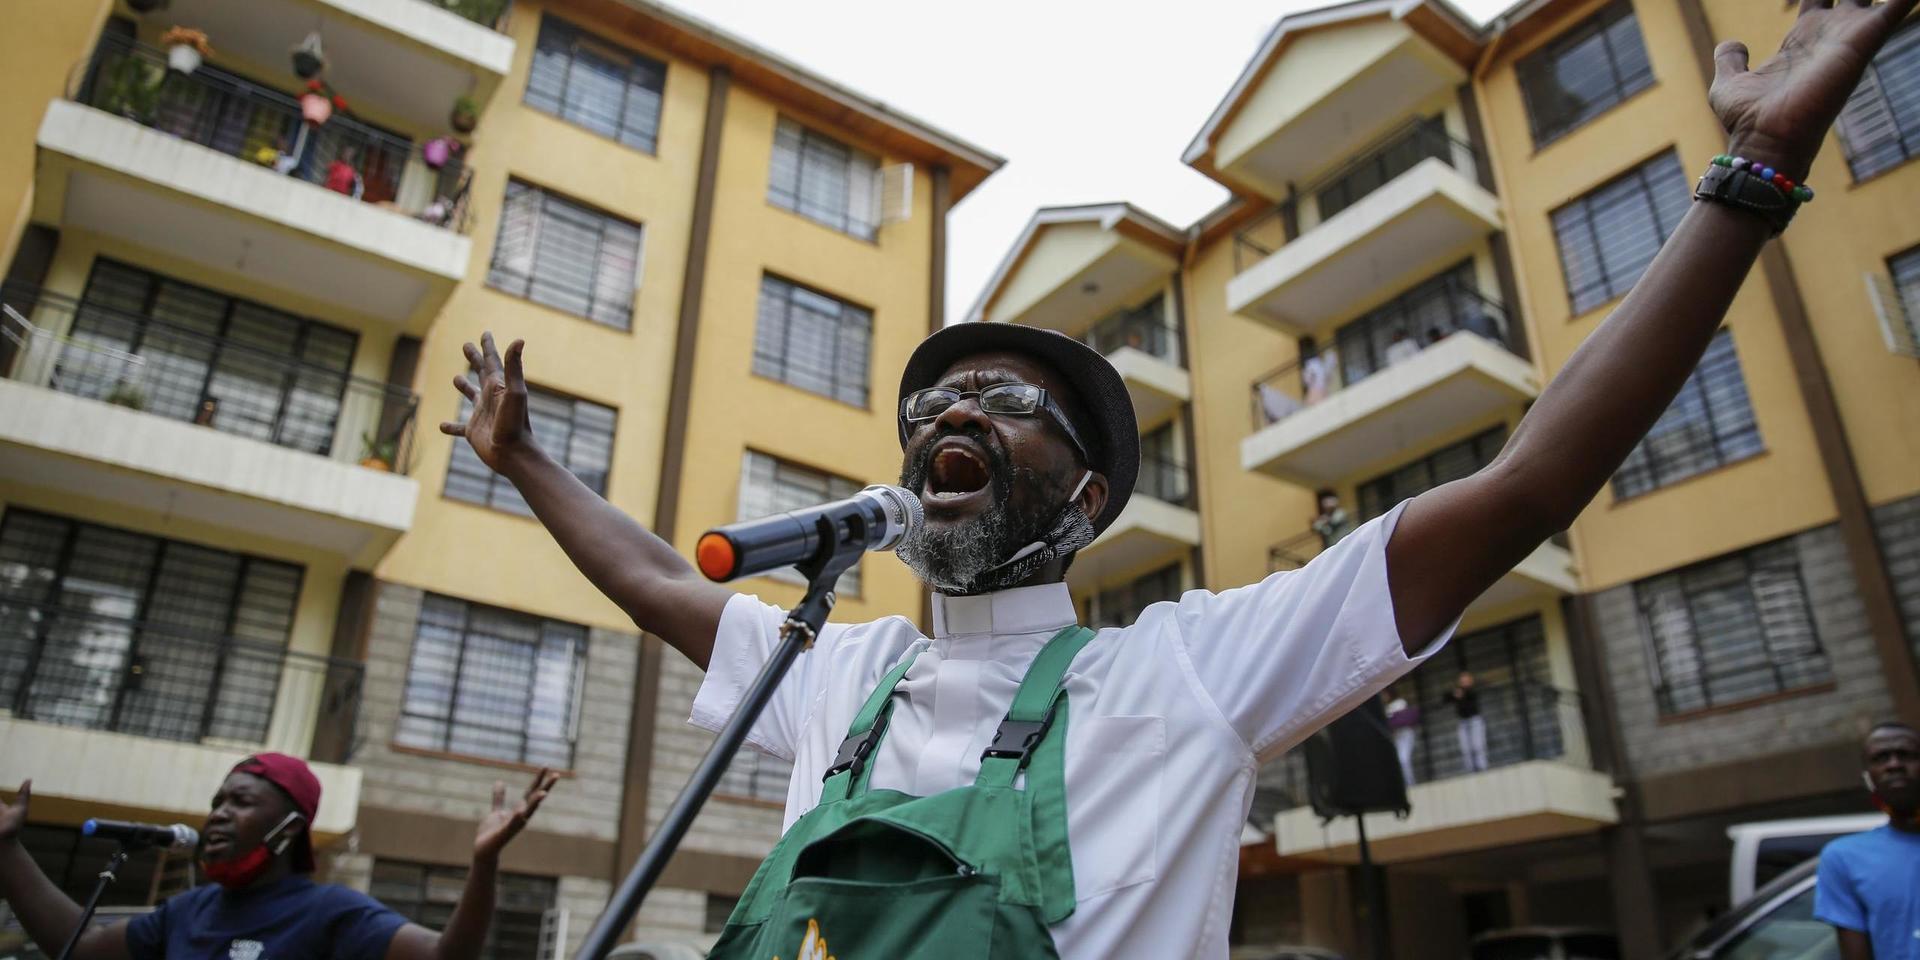 Paul Machira sjunger och predikar för boende i ett lägenhetsområde i den kenyanska huvudstaden Nairobi. Runt om honom sjunger och dansar barn på sina balkonger. 